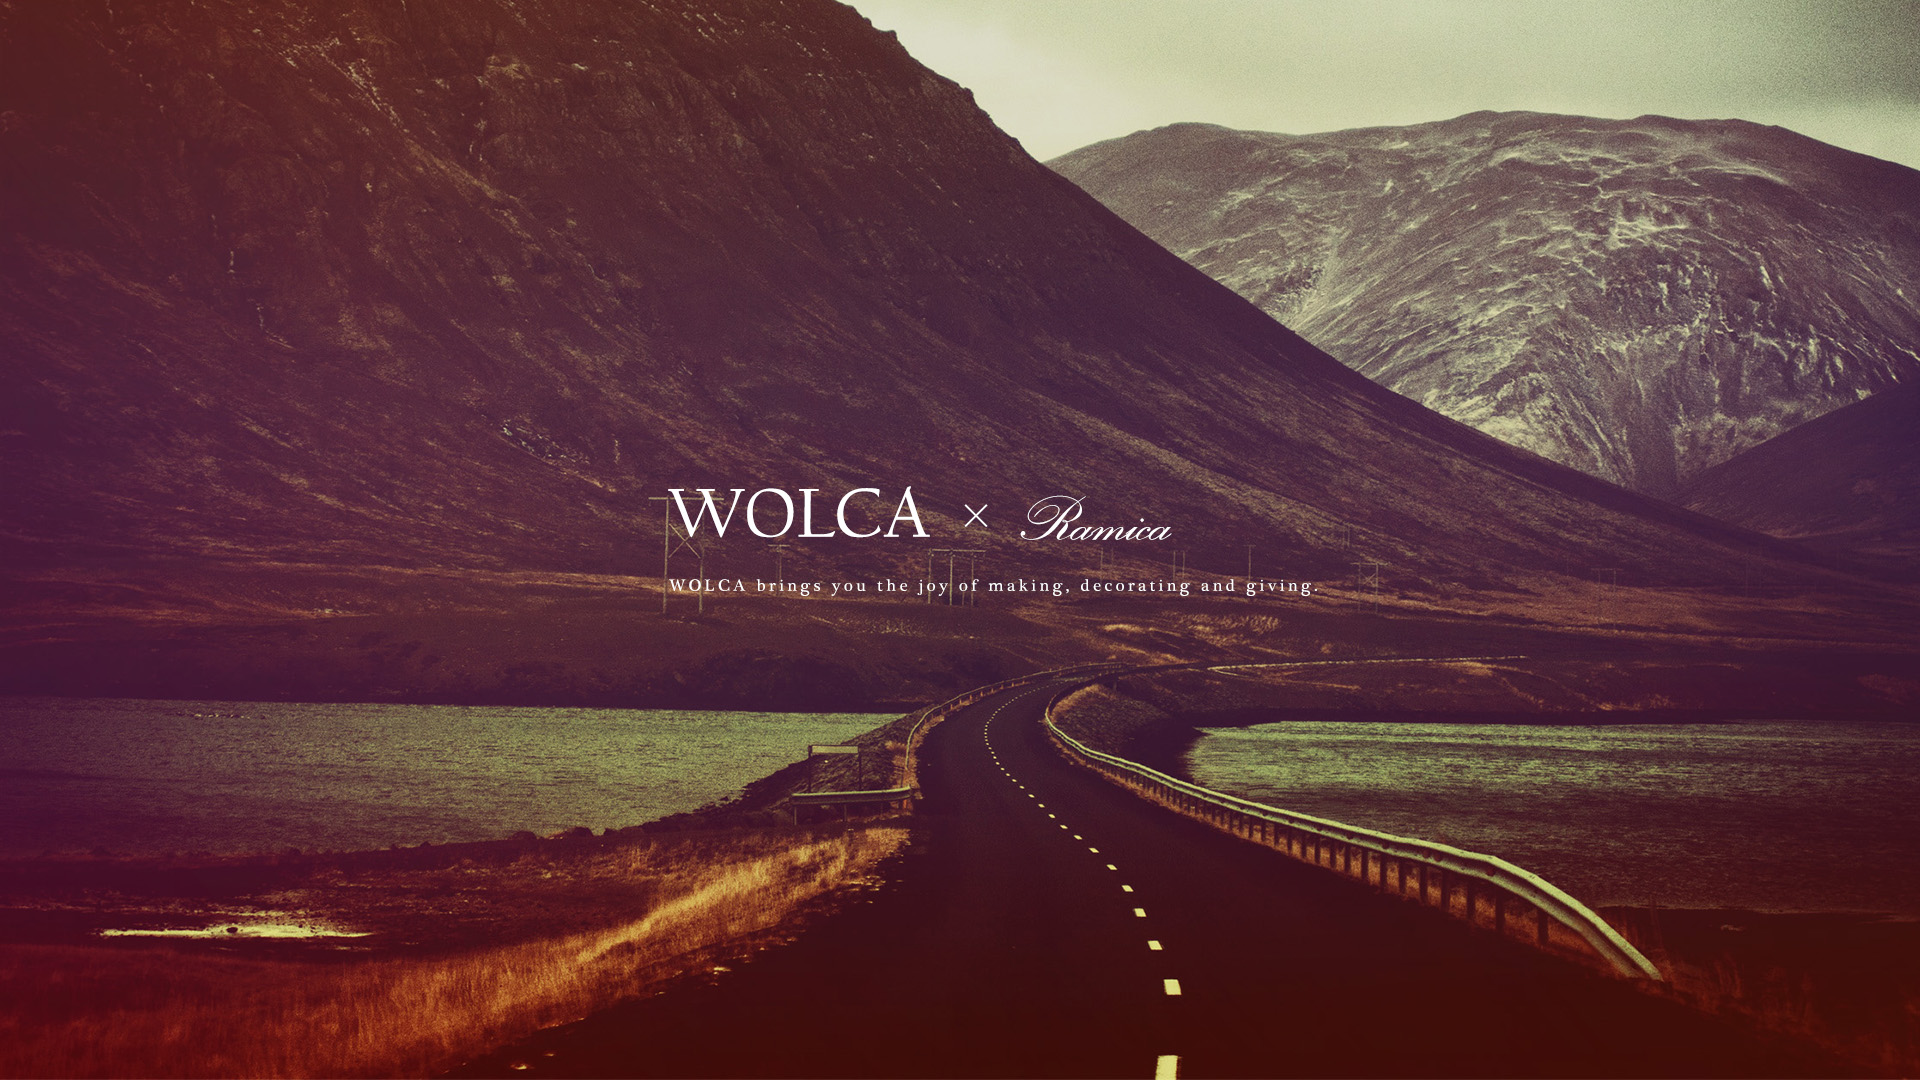 デスクトップpc用壁紙 山へと続く道を写した写真 Wolca